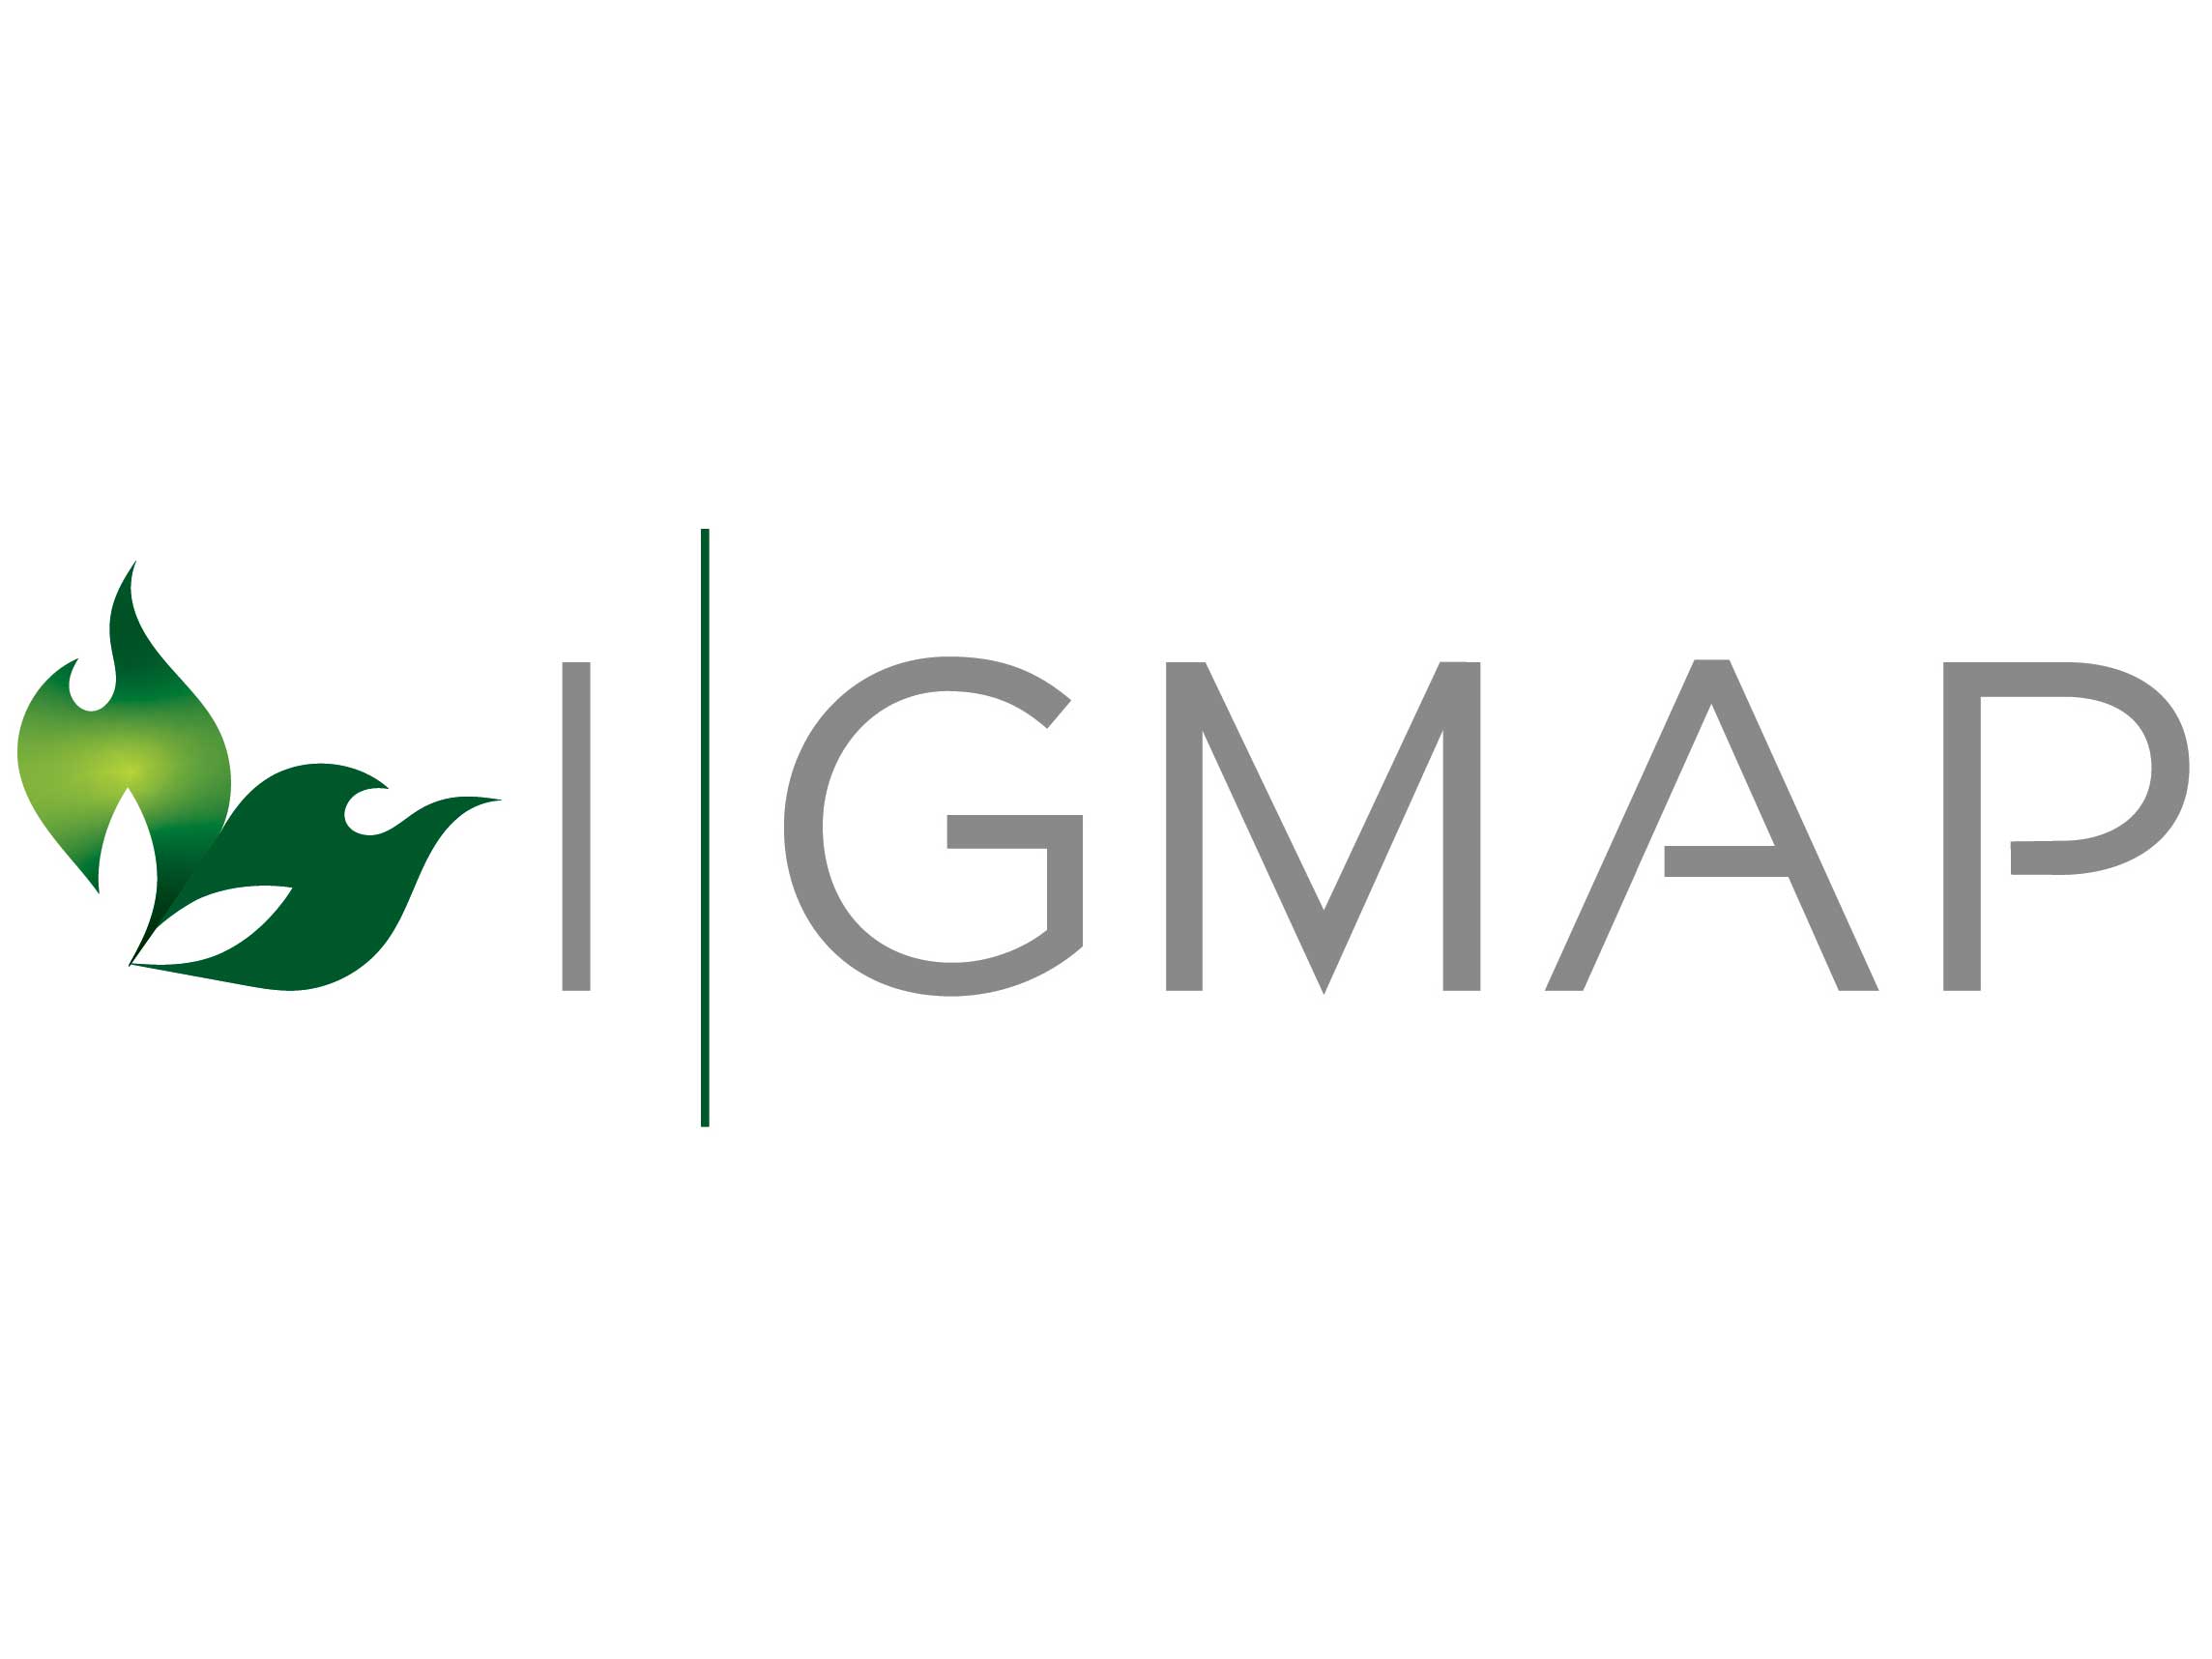 i-gmap logo photo